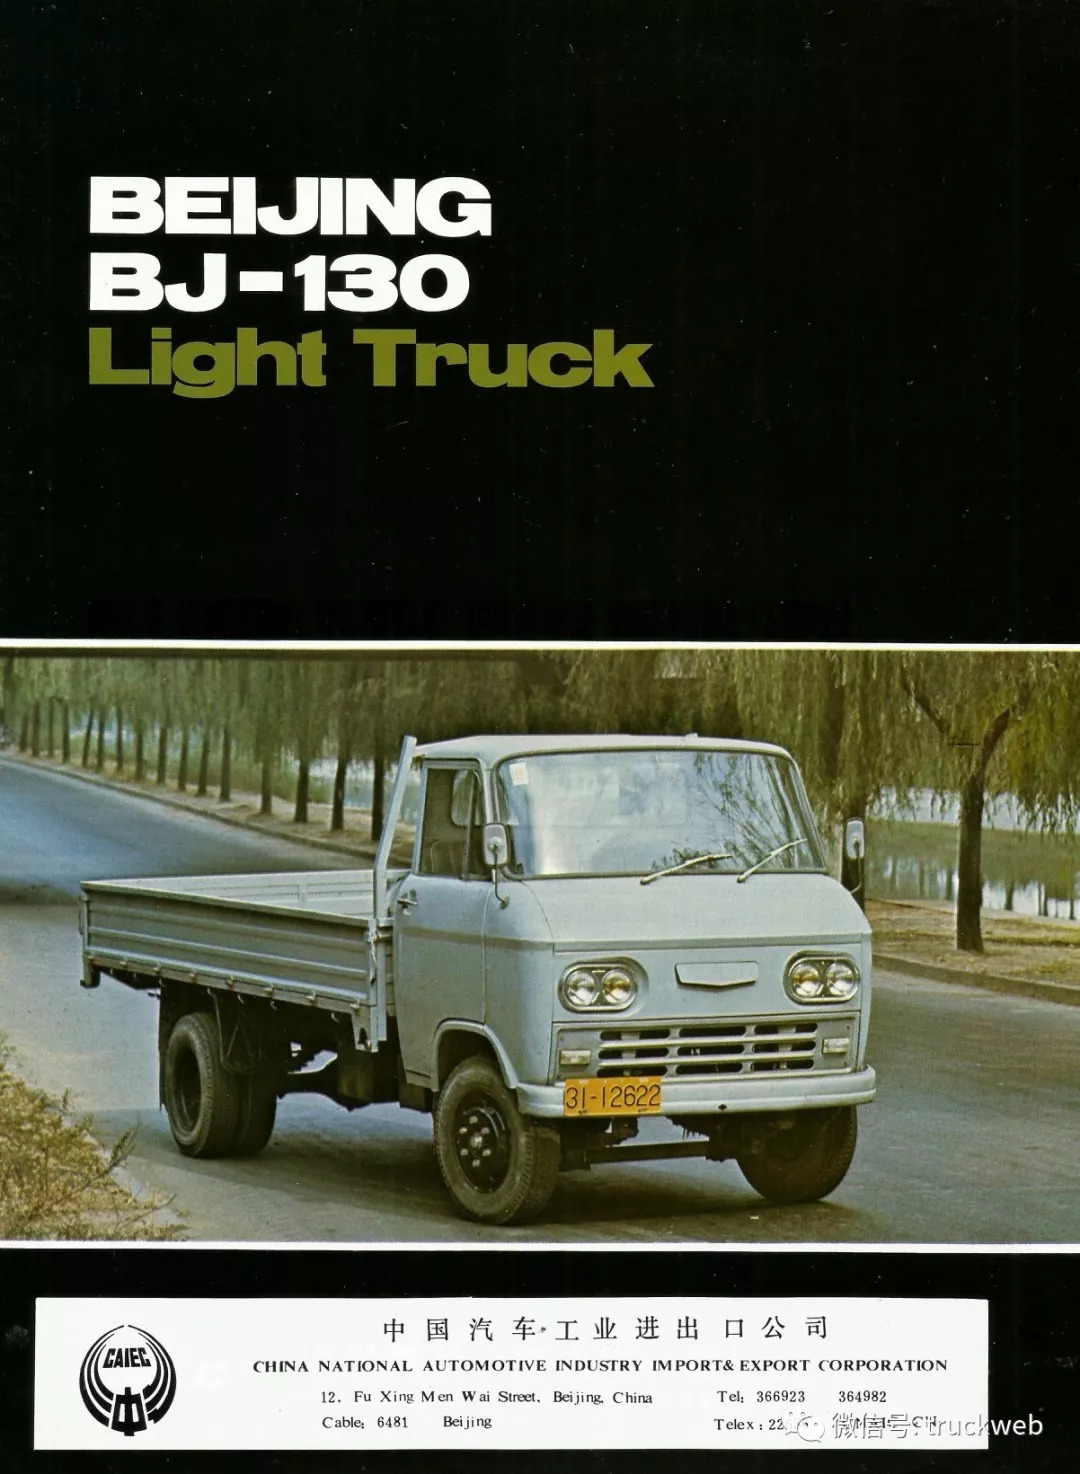 当之无愧的国民轻卡 上世纪80年代bj-130轻型载货汽车